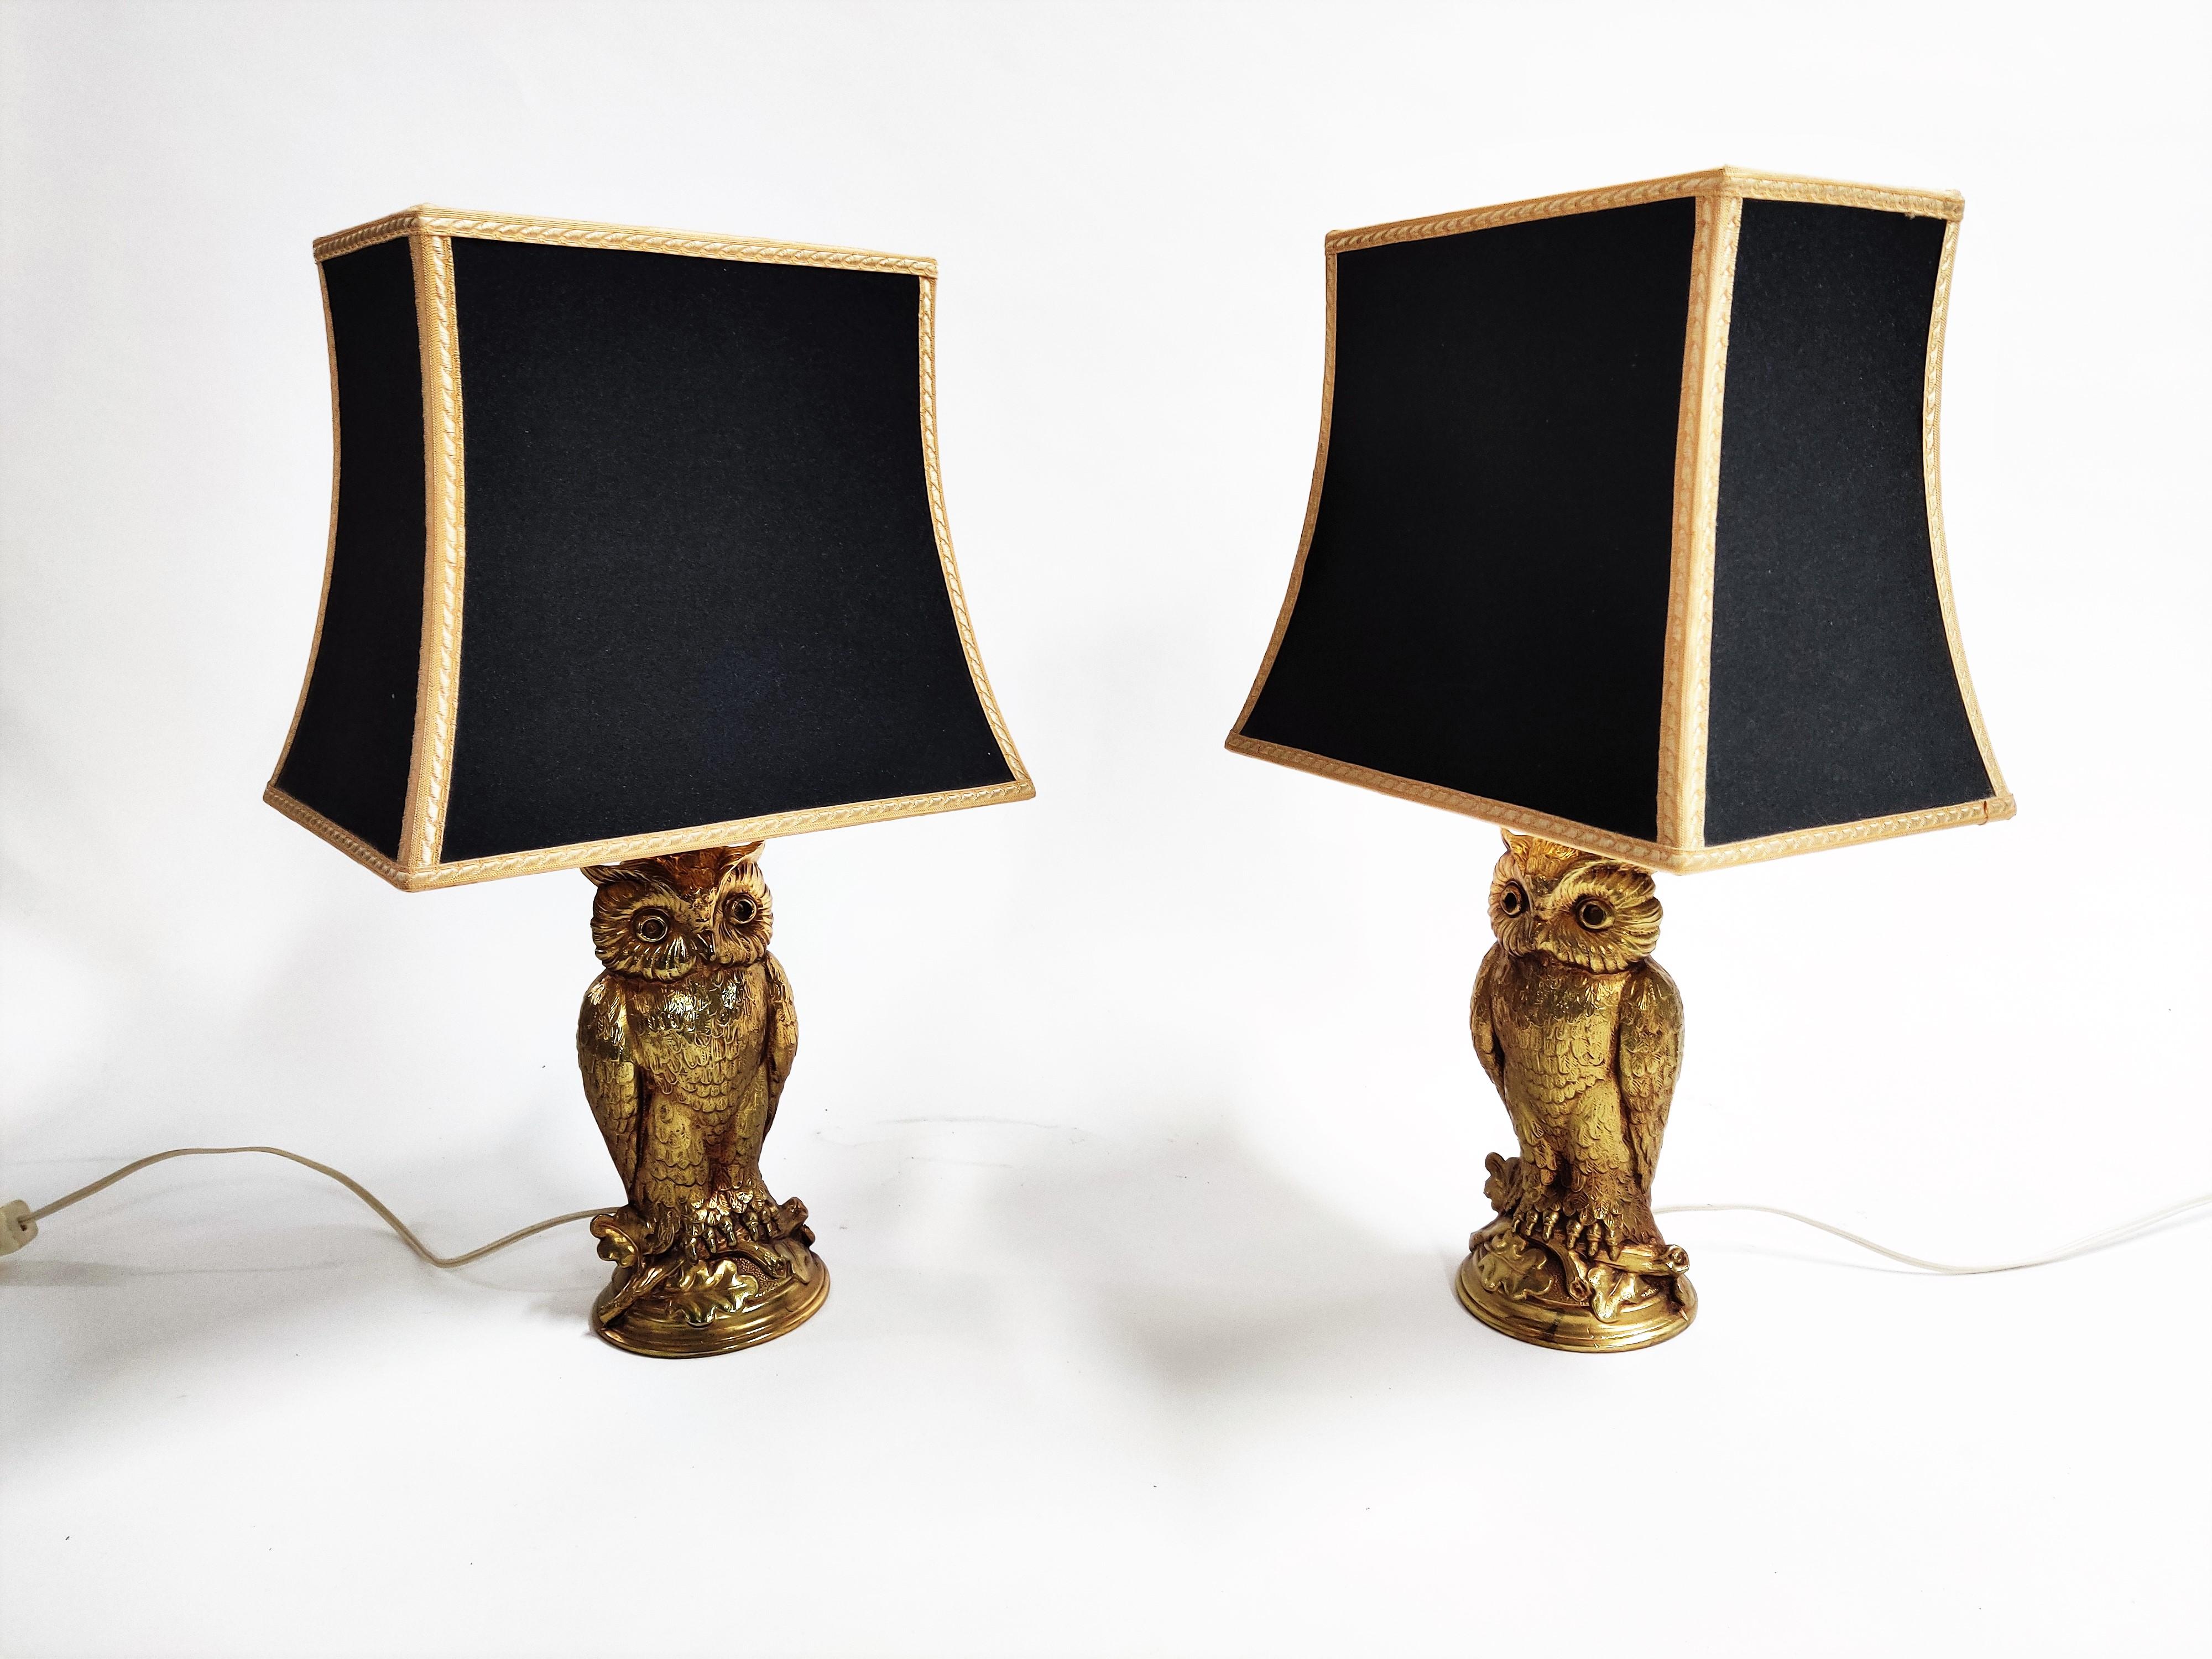 loevsky & loevsky lamps history